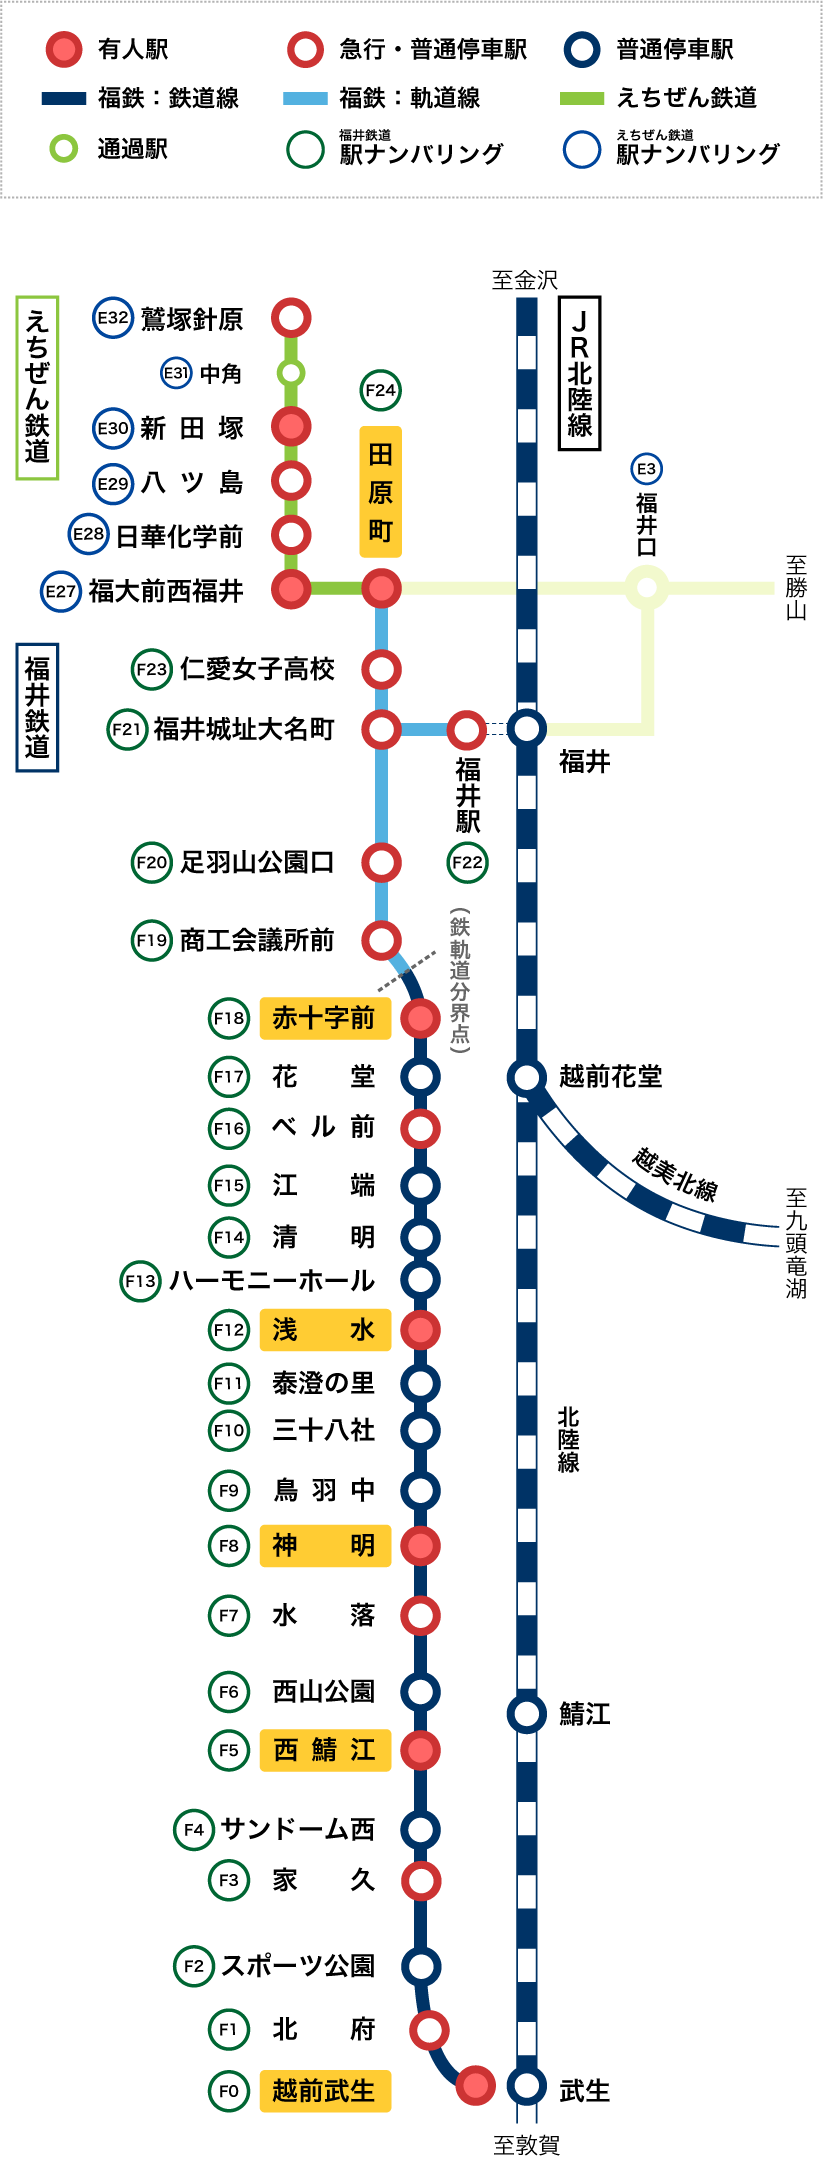 「福井鉄道」の運行路線図